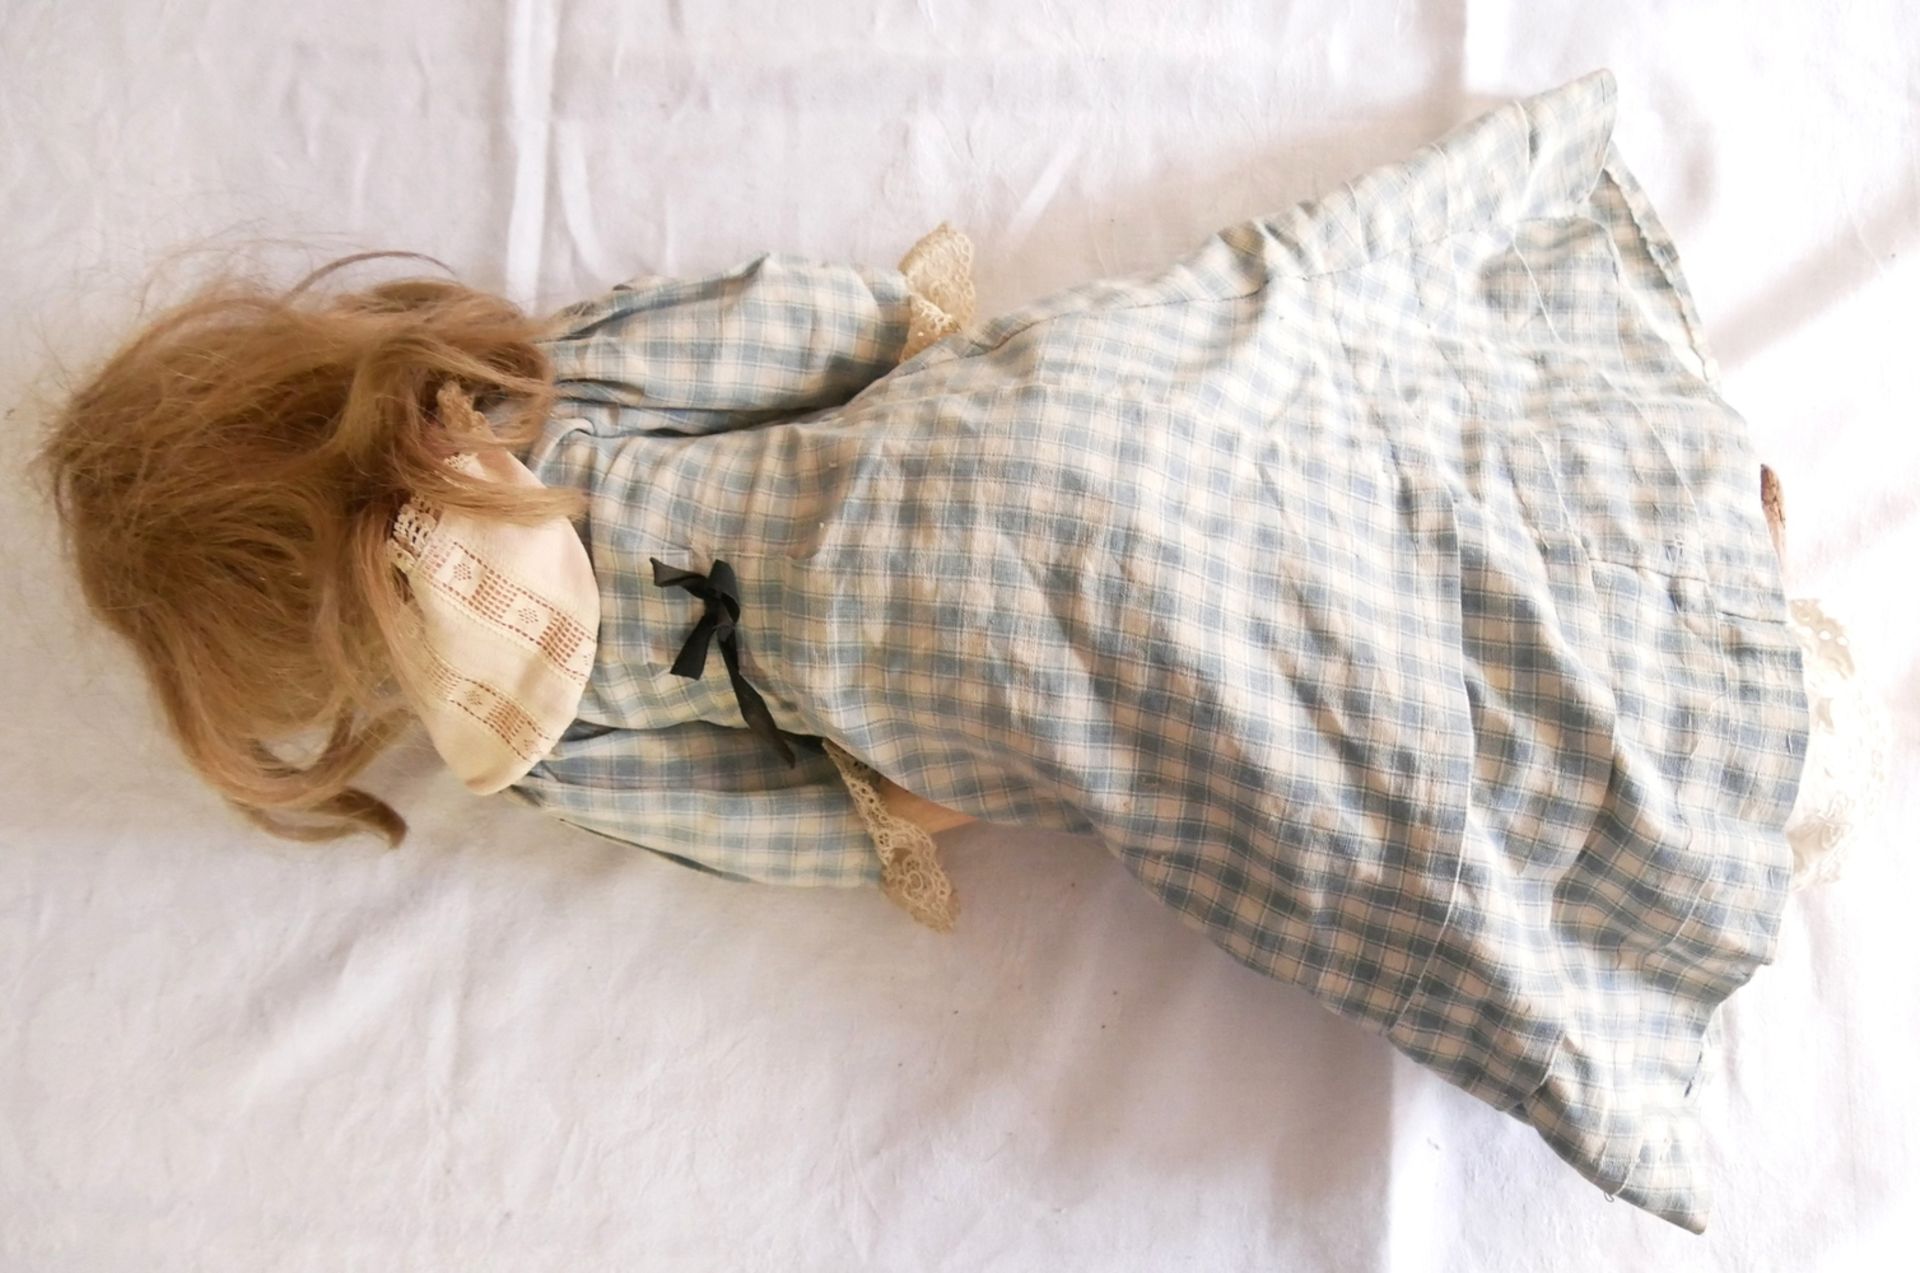 Porzellankopf Puppe Simon Halbig mit Glasaugen und Massekörper, original Bekleidung. Bespielter - Image 2 of 3